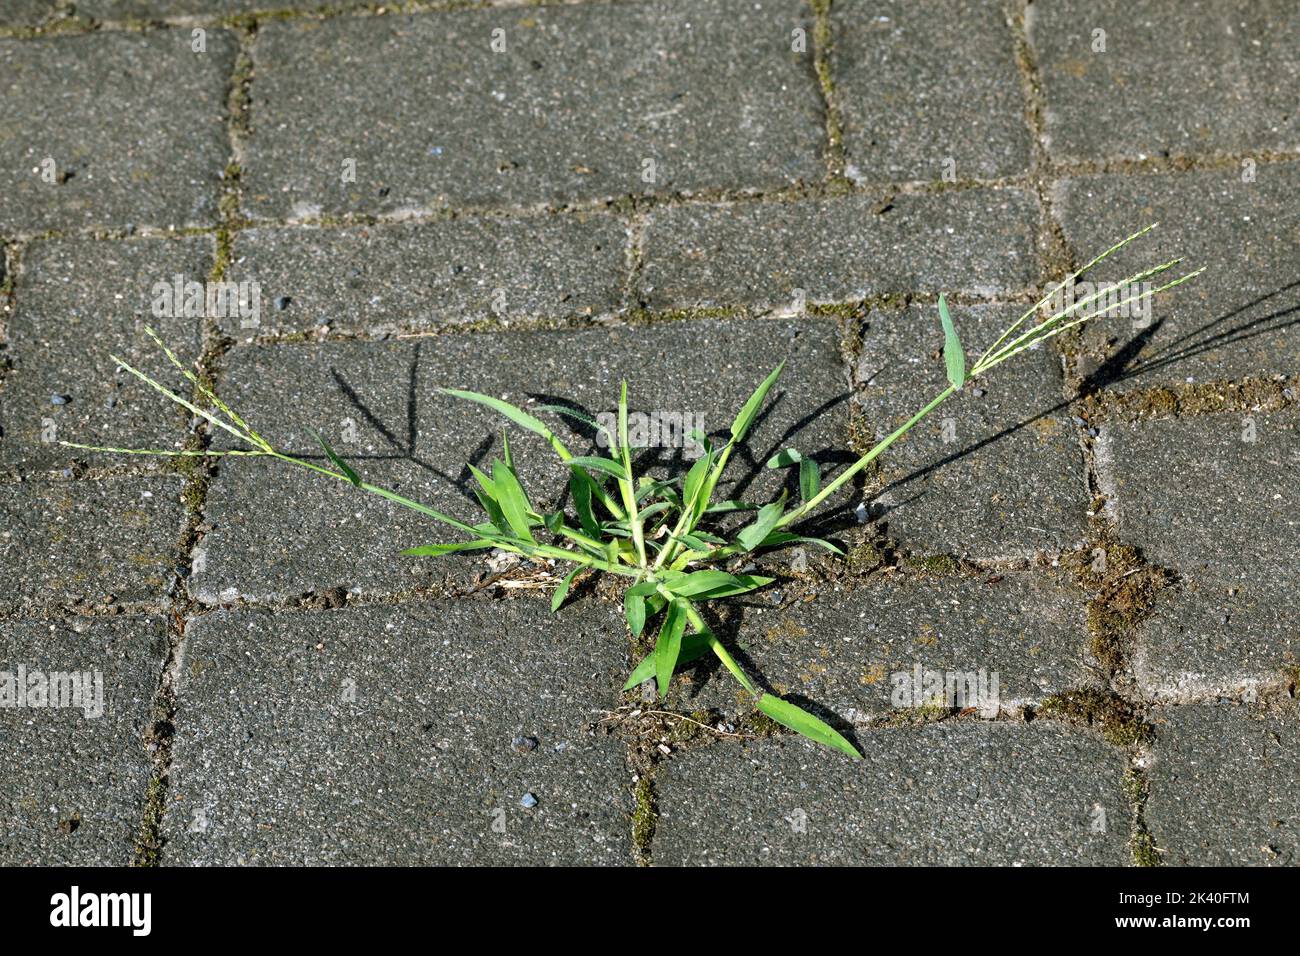 Herbe à doigts poilue, grande herbacée (Digitaria sanguinalis), sur un trottoir, Allemagne Banque D'Images